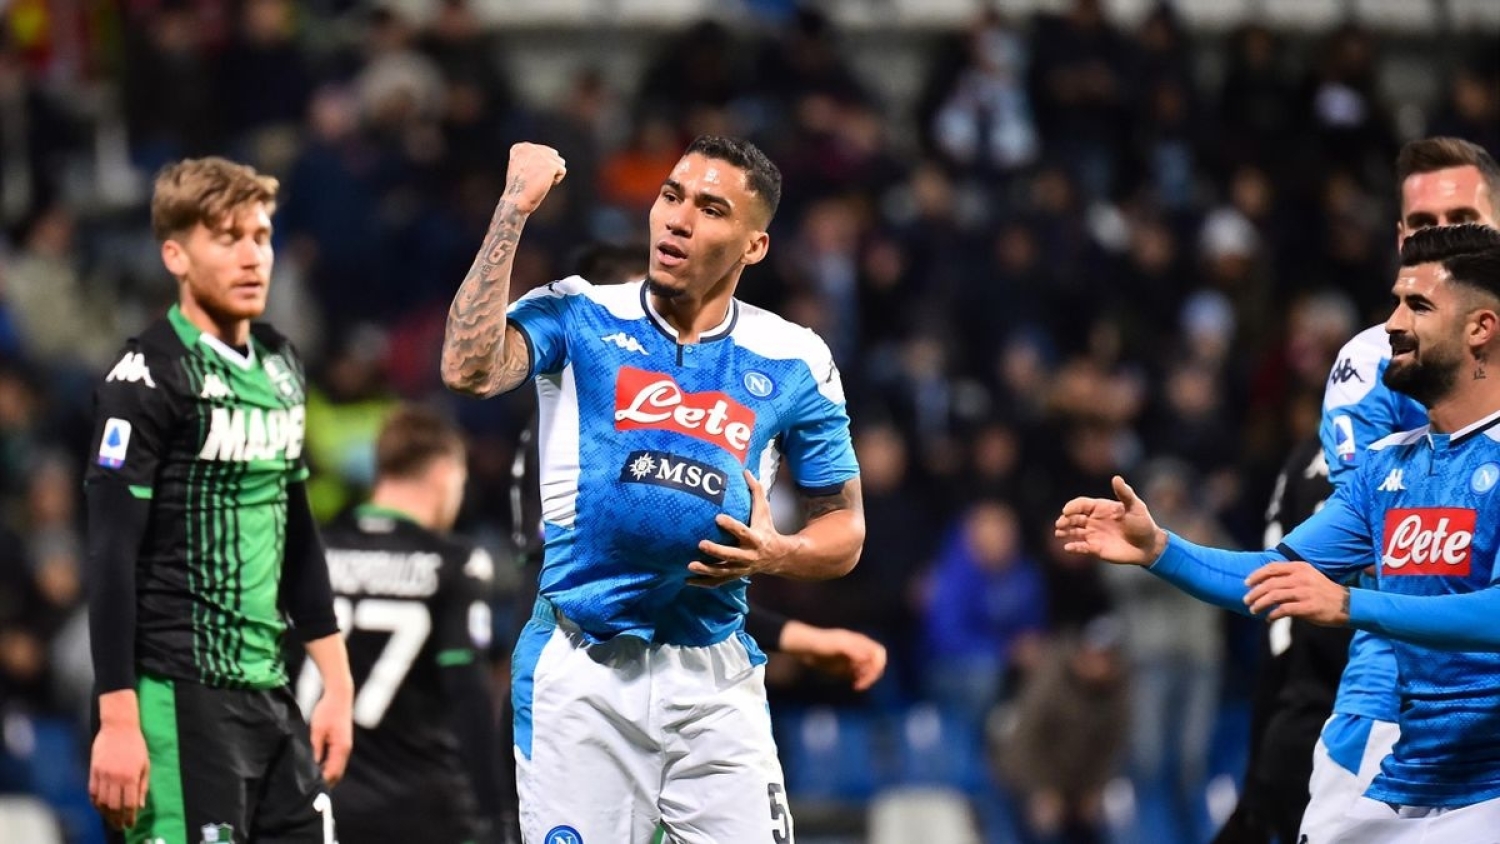 Sassuolo - Napoli, i precedenti: un solo successo azzurro negli ultimi 6 match al "Mapei"